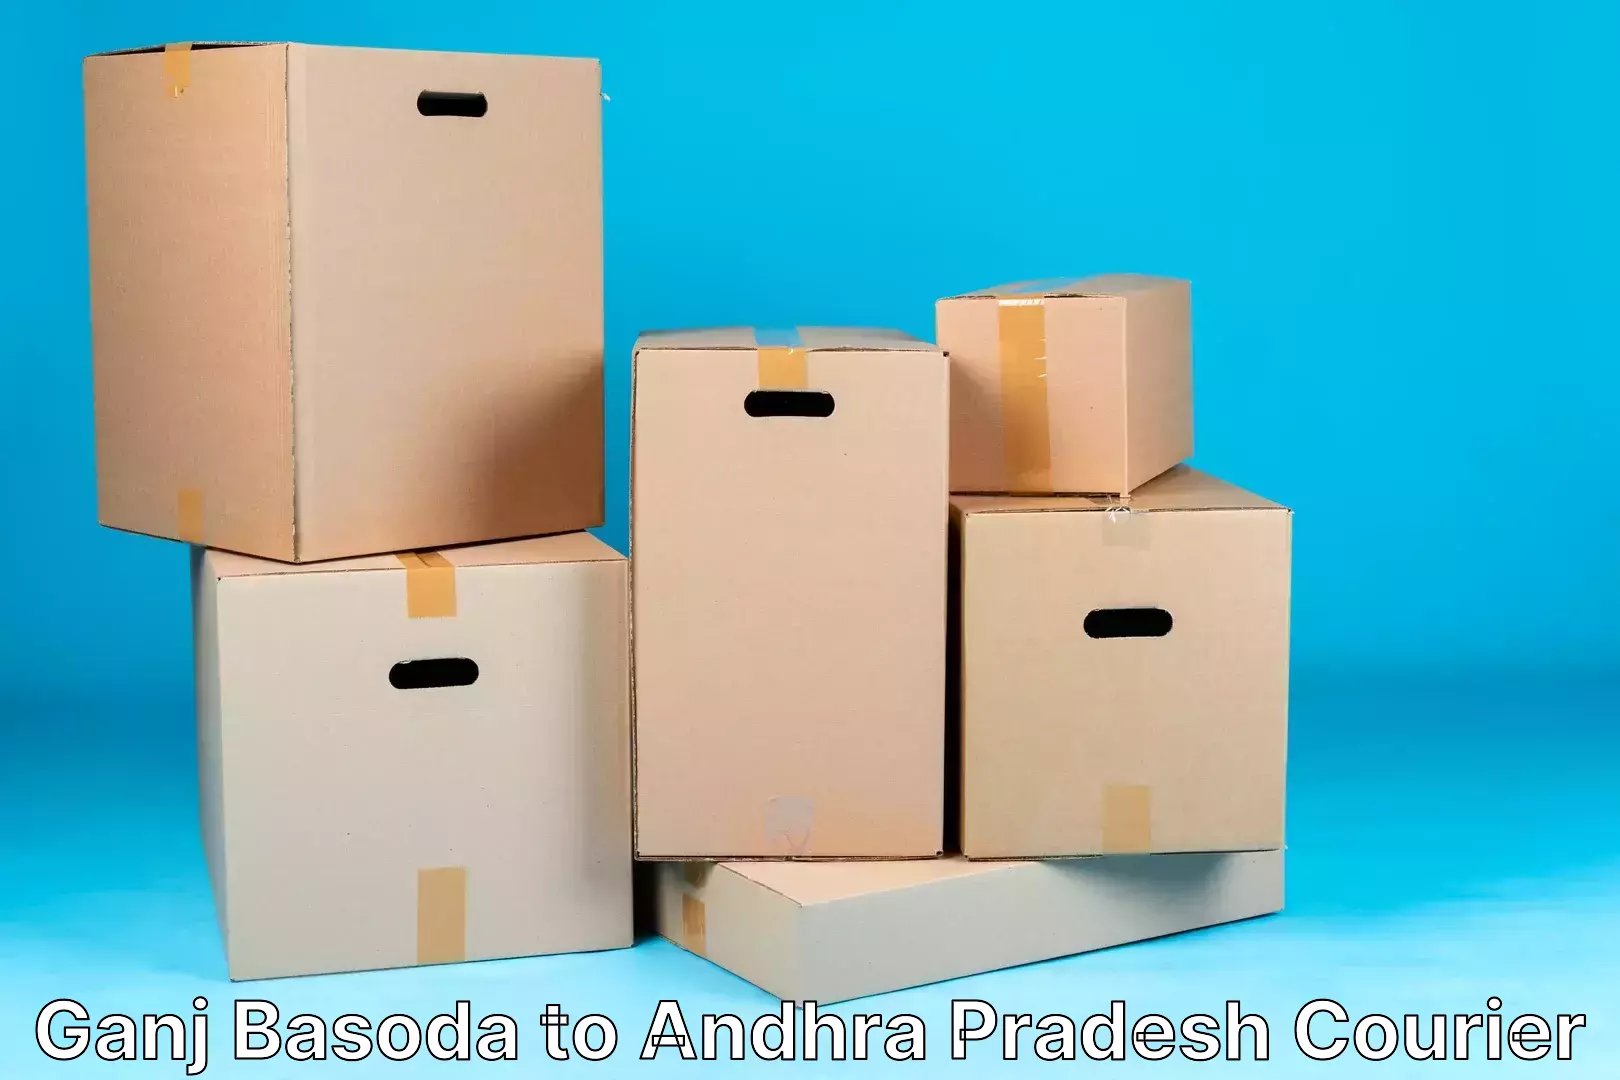 Express courier capabilities Ganj Basoda to Andhra Pradesh